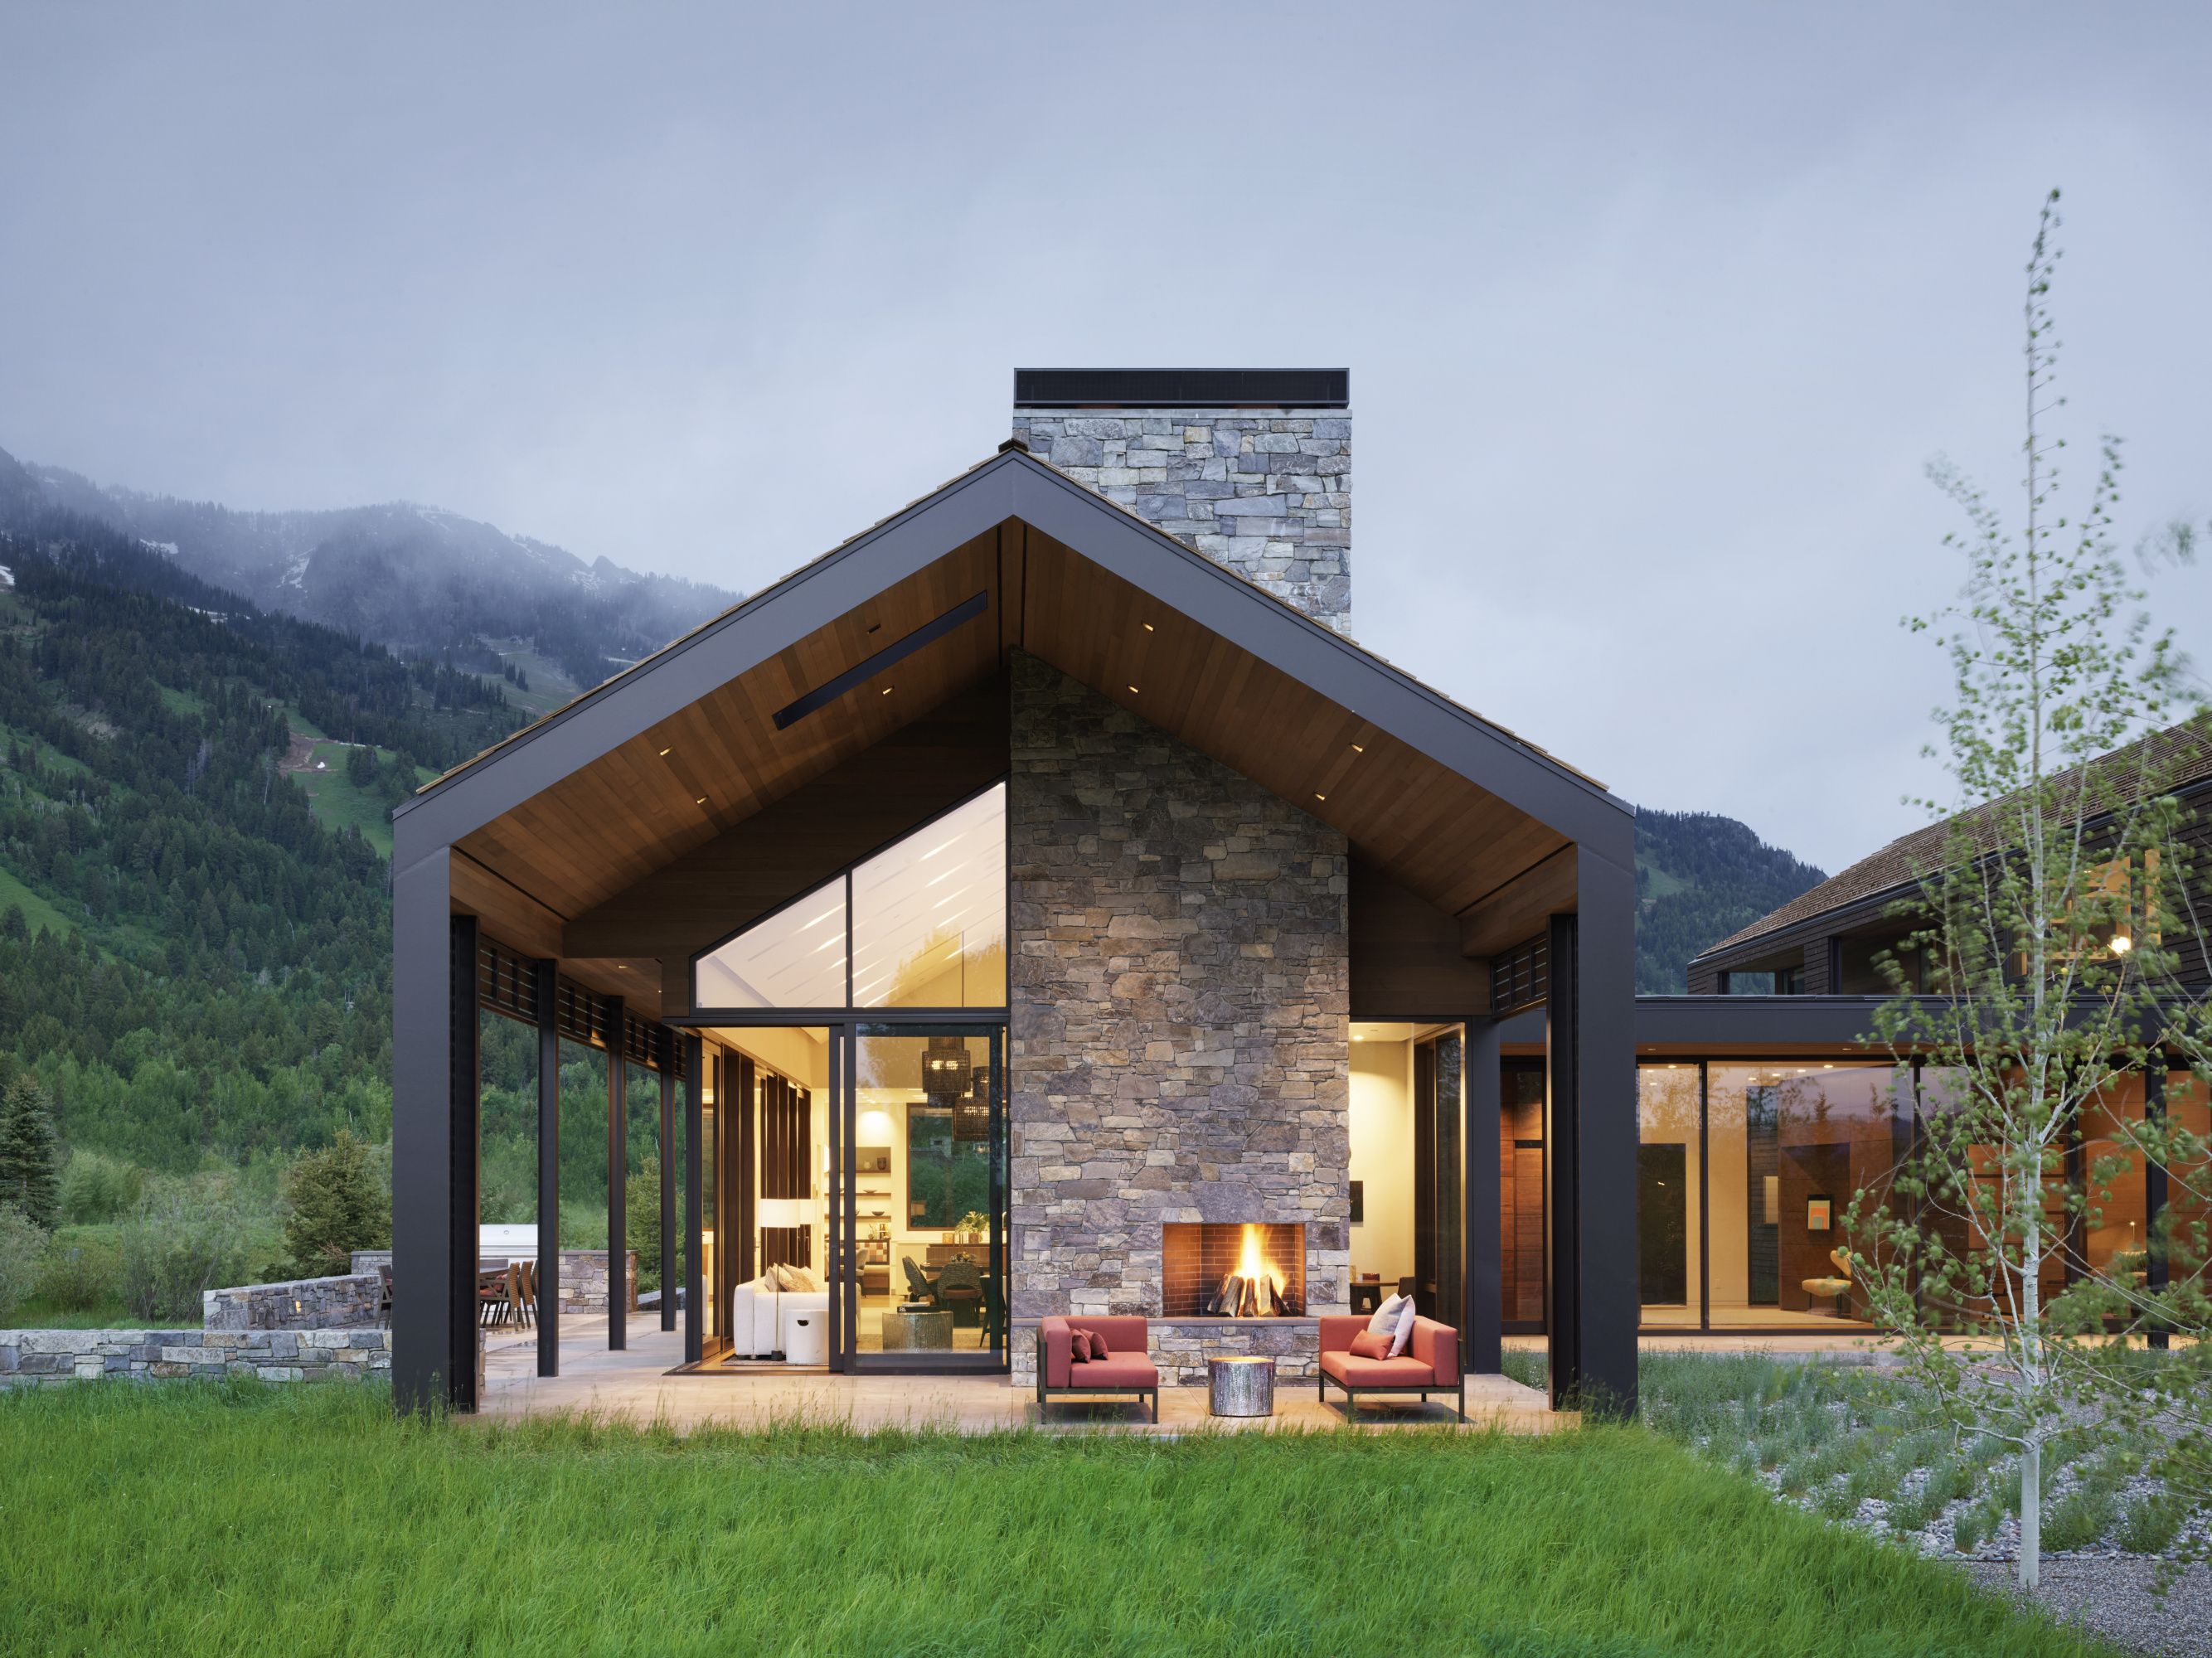 Una casa de campo de estilo rústico moderno y diseño